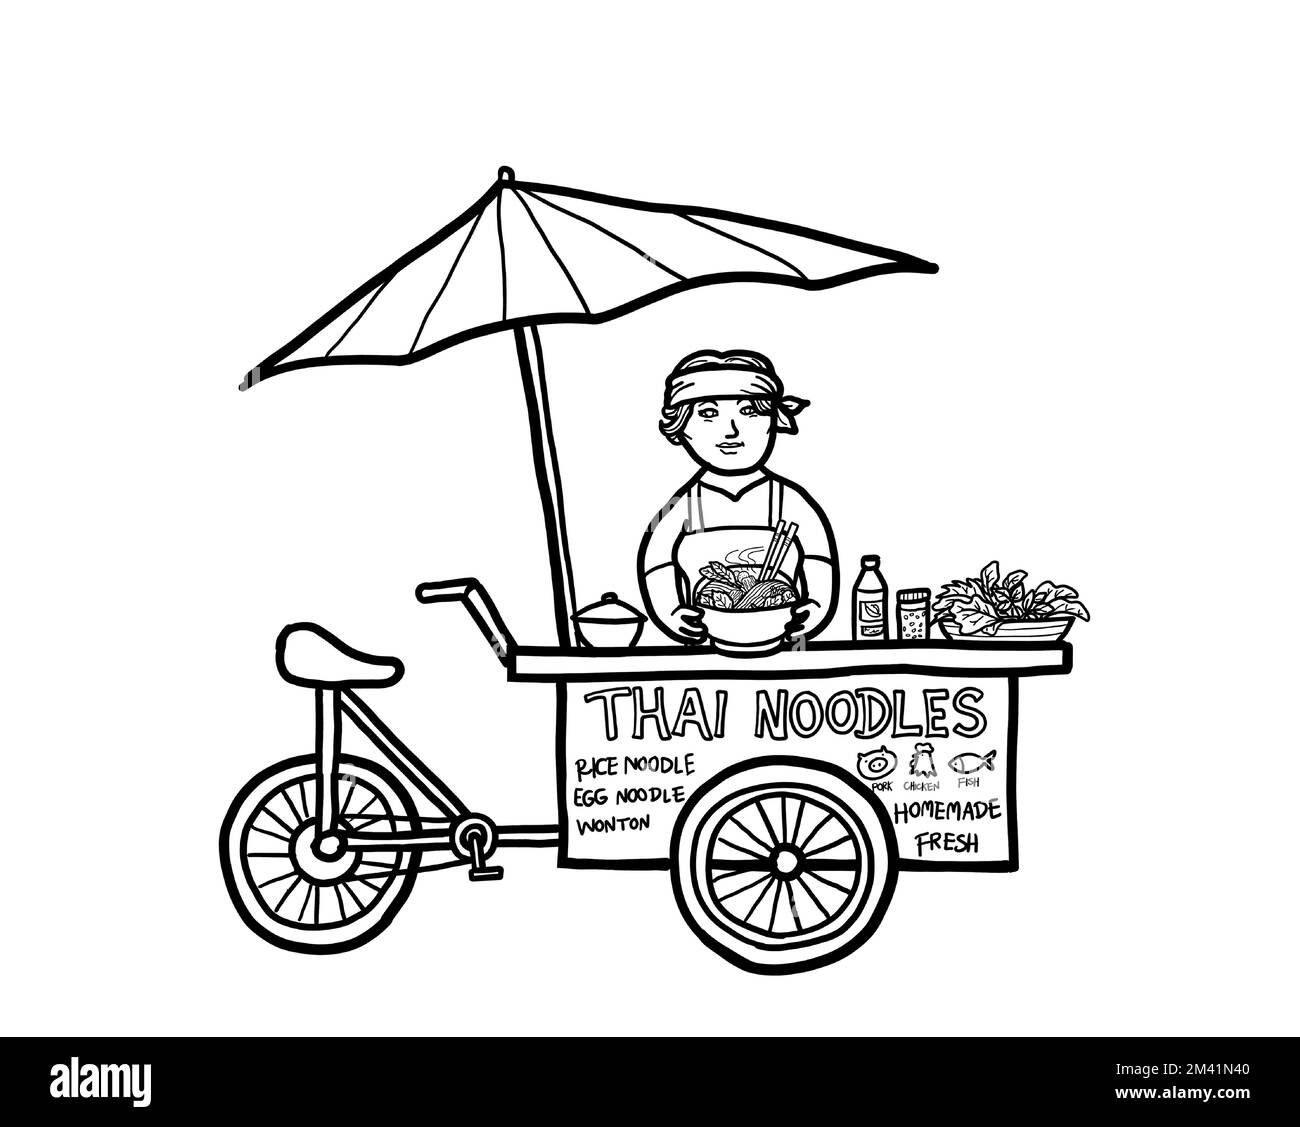 Eine junge asiatische Verkäuferin, die thailändische Nudeln auf einem Speisefahrrad verkauft. Street Food Thailand. Konzept der gesunden Ernährung. Schwarzweißzeichnung. Stock Vektor